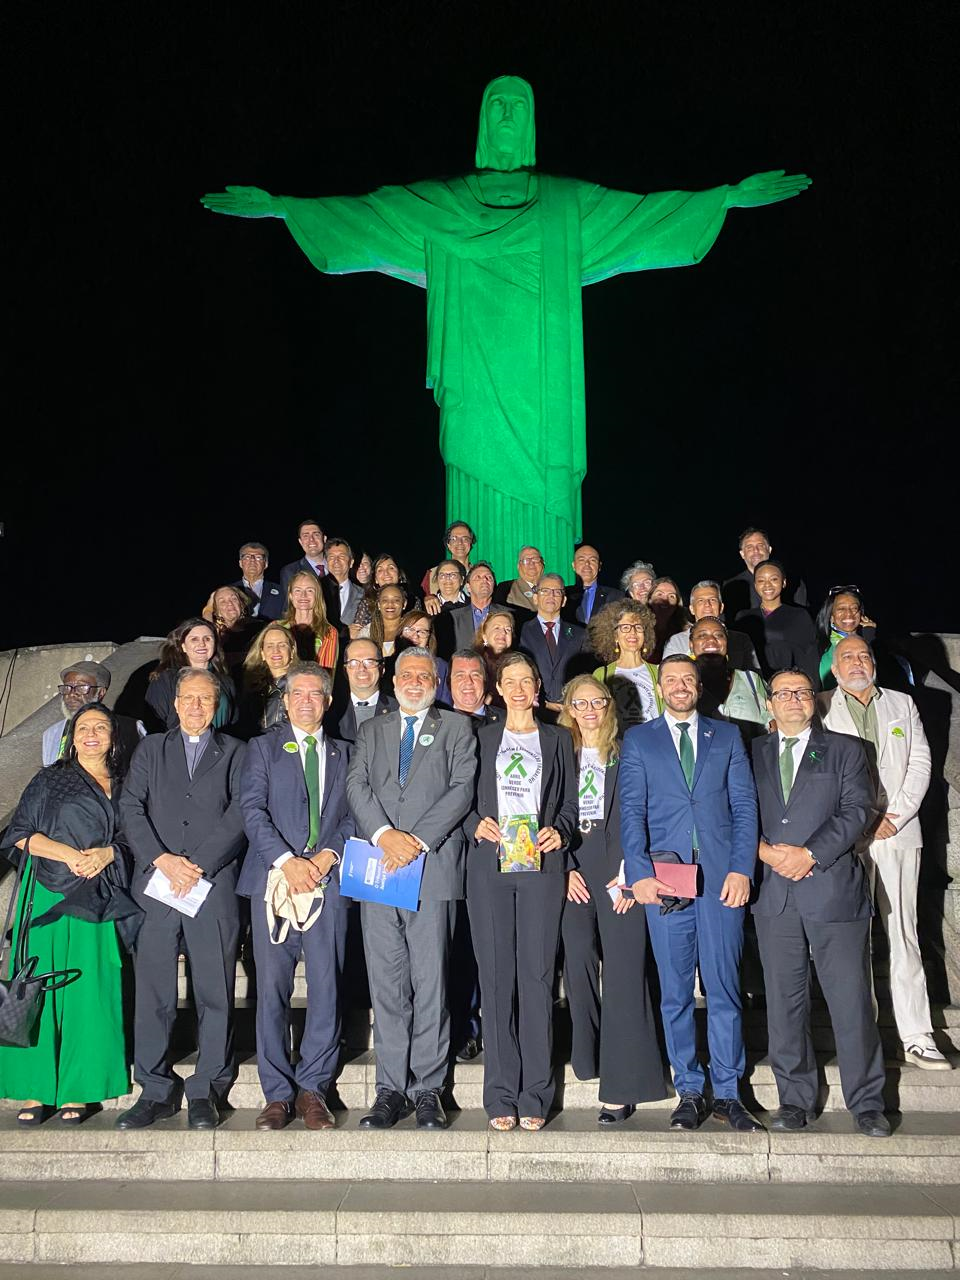 Diversas pessoas posadas para foto na escadaria aos pés do cristo redentor, que está na cor verde.